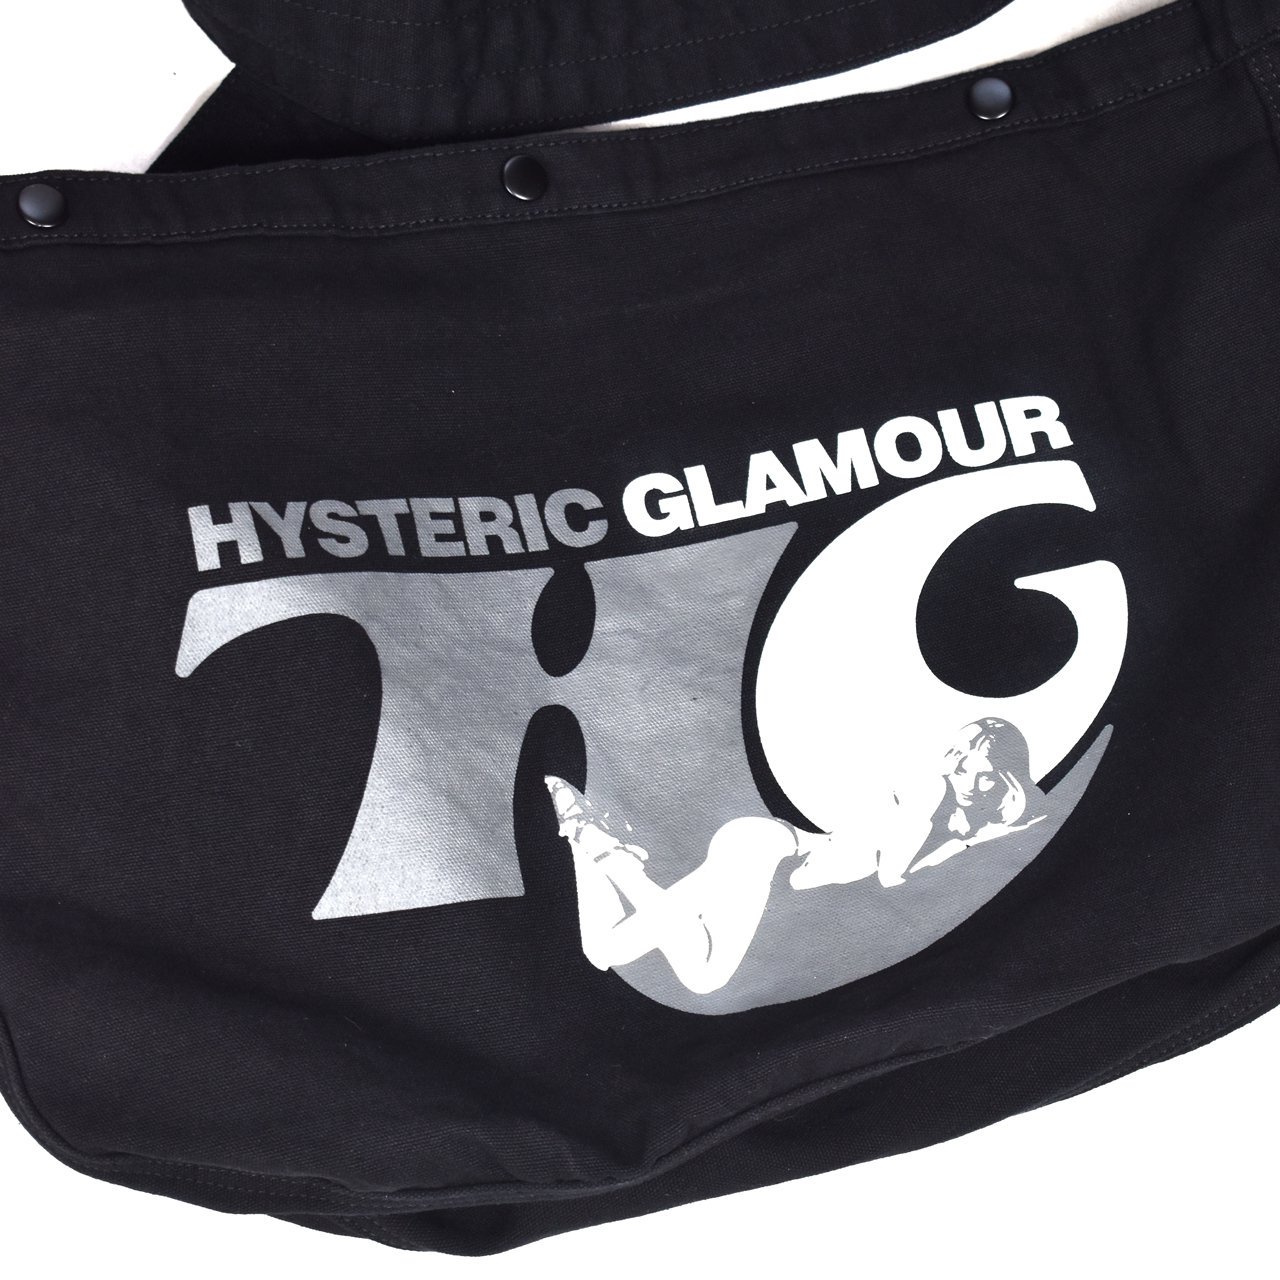 HYSTERIC GLAMOUR(ヒステリックグラマー)24SS/春夏
HG WOMAN ショルダーバッグ ブラック
